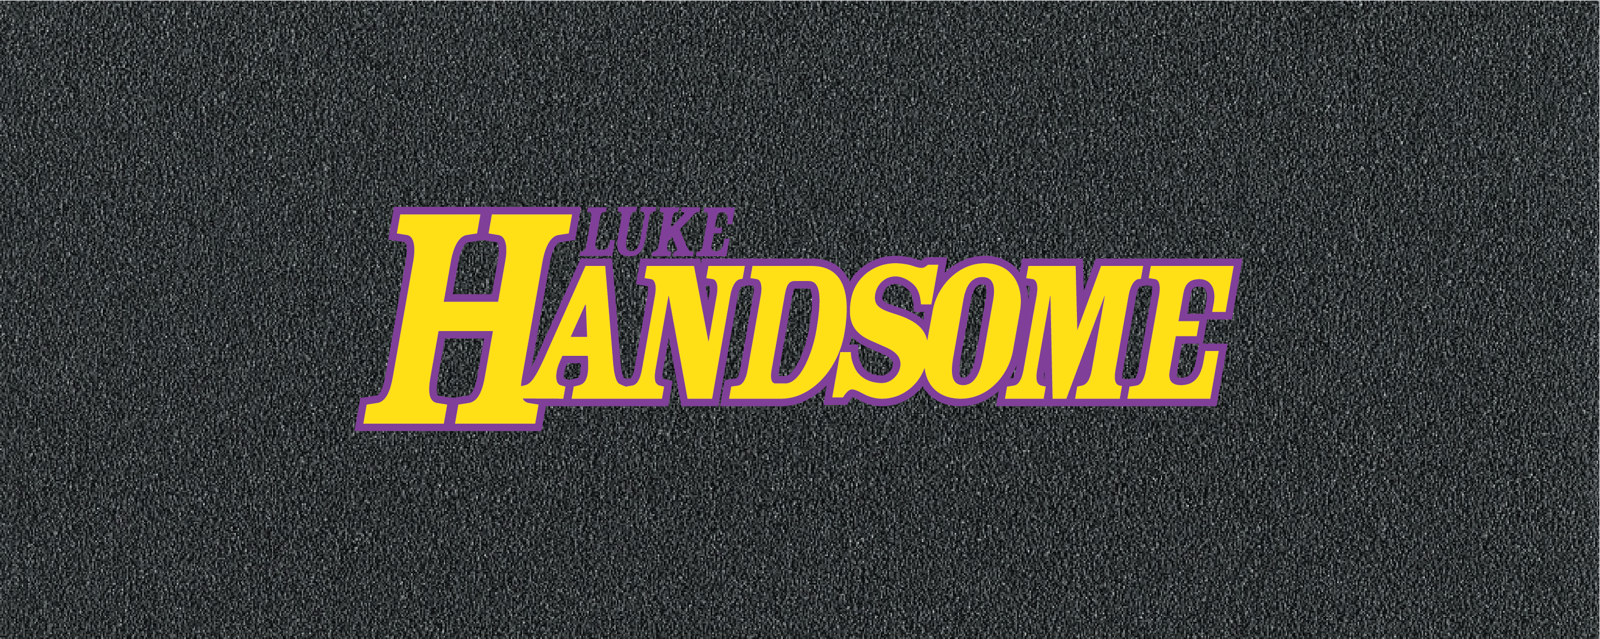 Luke Handsome